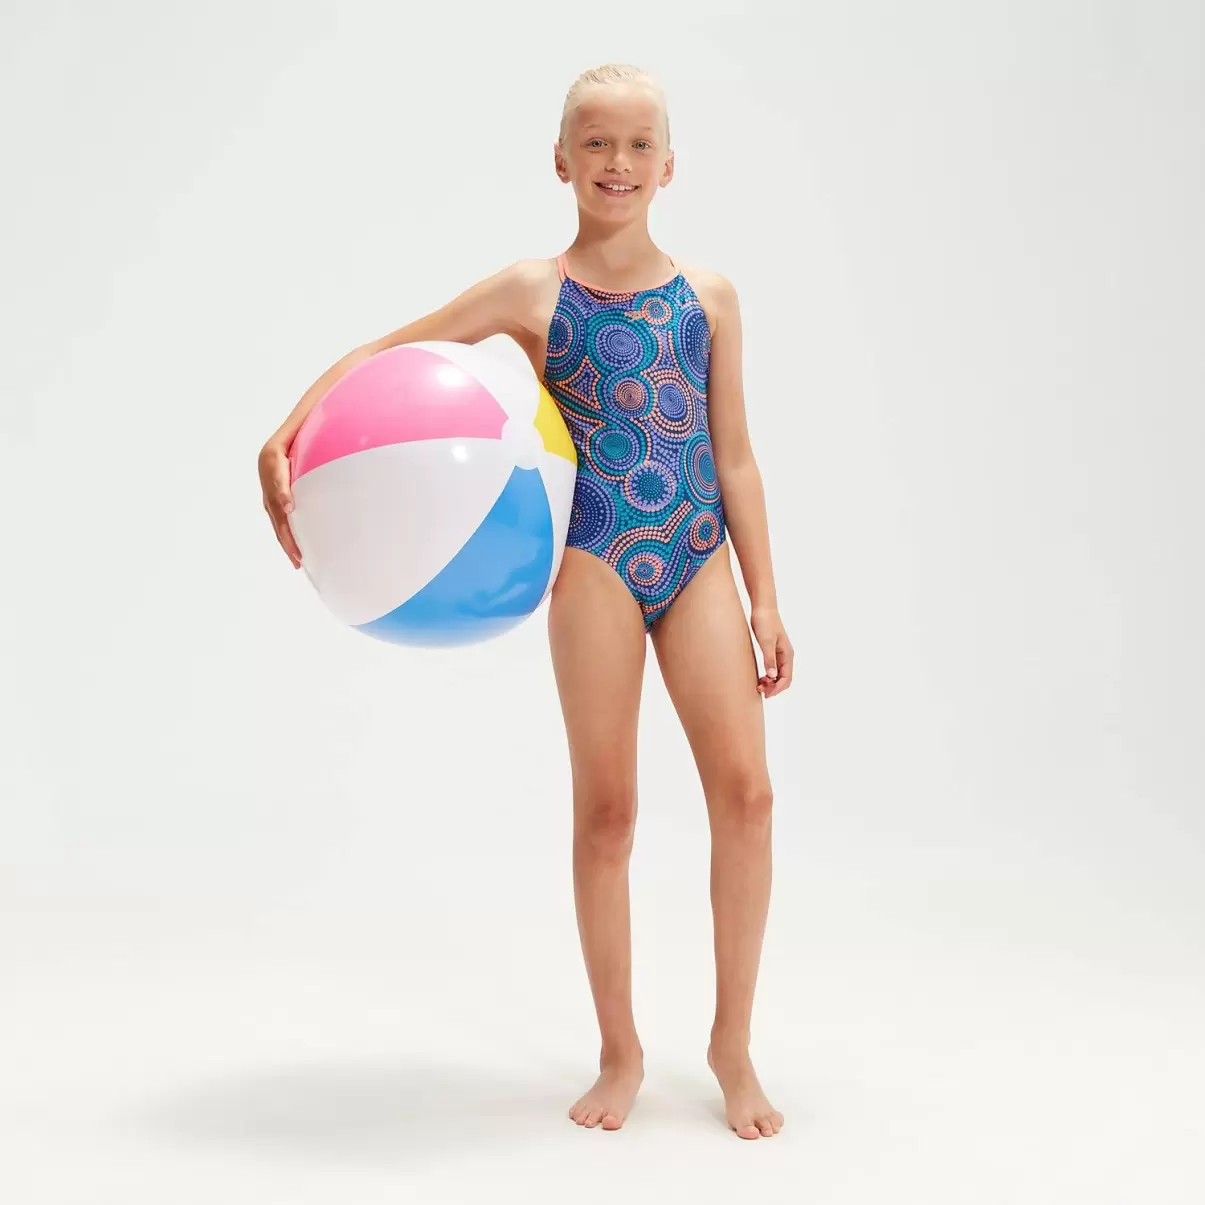 Speedo Mädchen Bademode Kinder Badeanzug Mit Doppelträgern Für Mädchen Blau/Koralle - 2